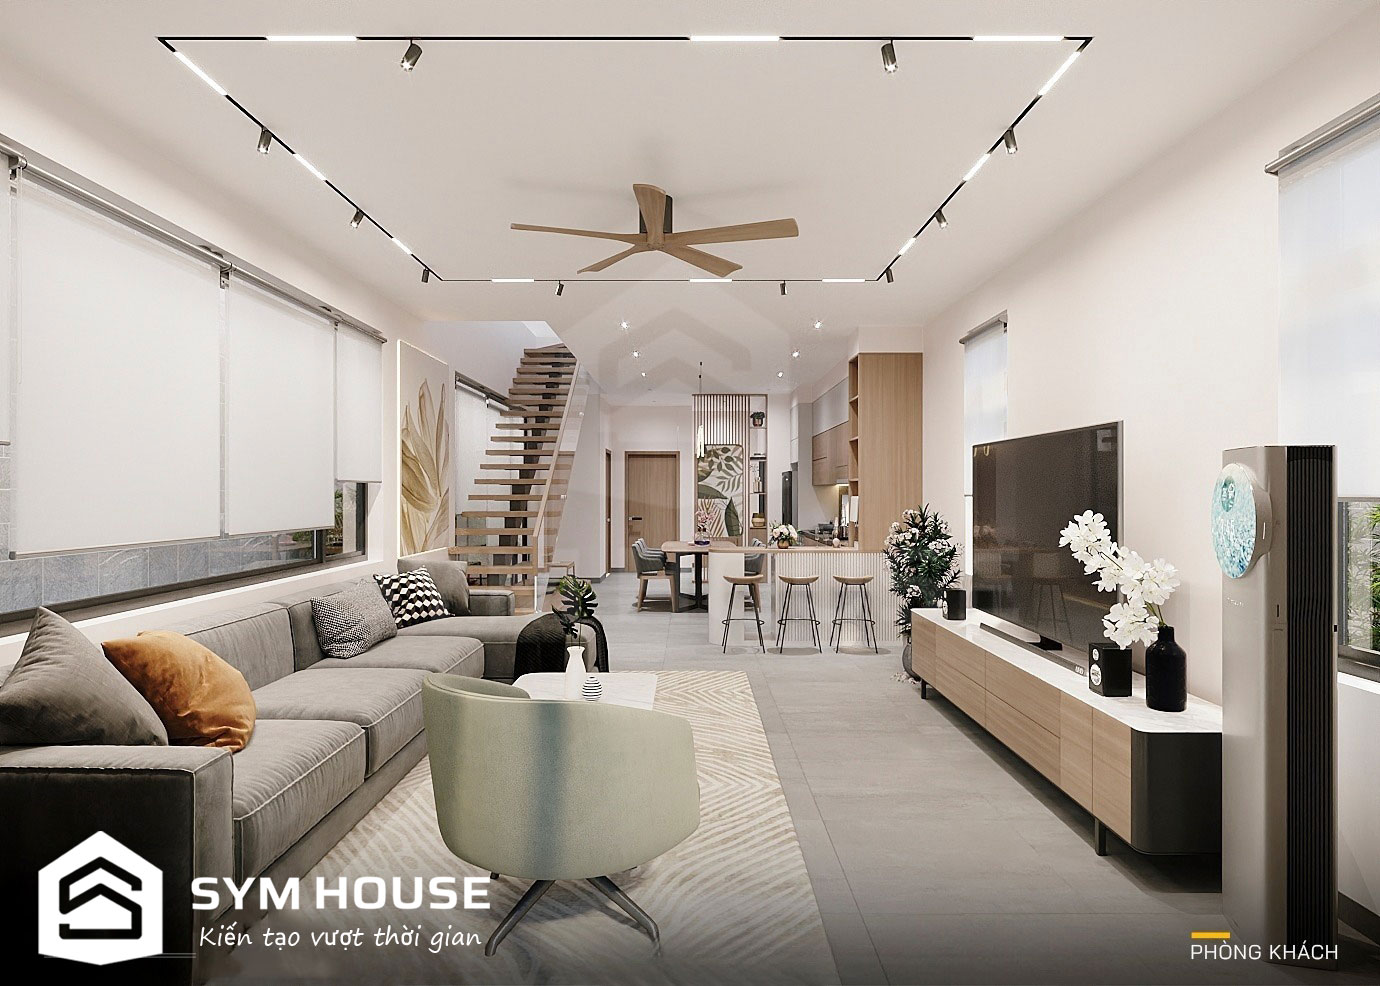 Thiết kế phòng khách và phòng bếp thông nhau giúp không gian tầng 1 rộng rãi, thoáng đãng hơn